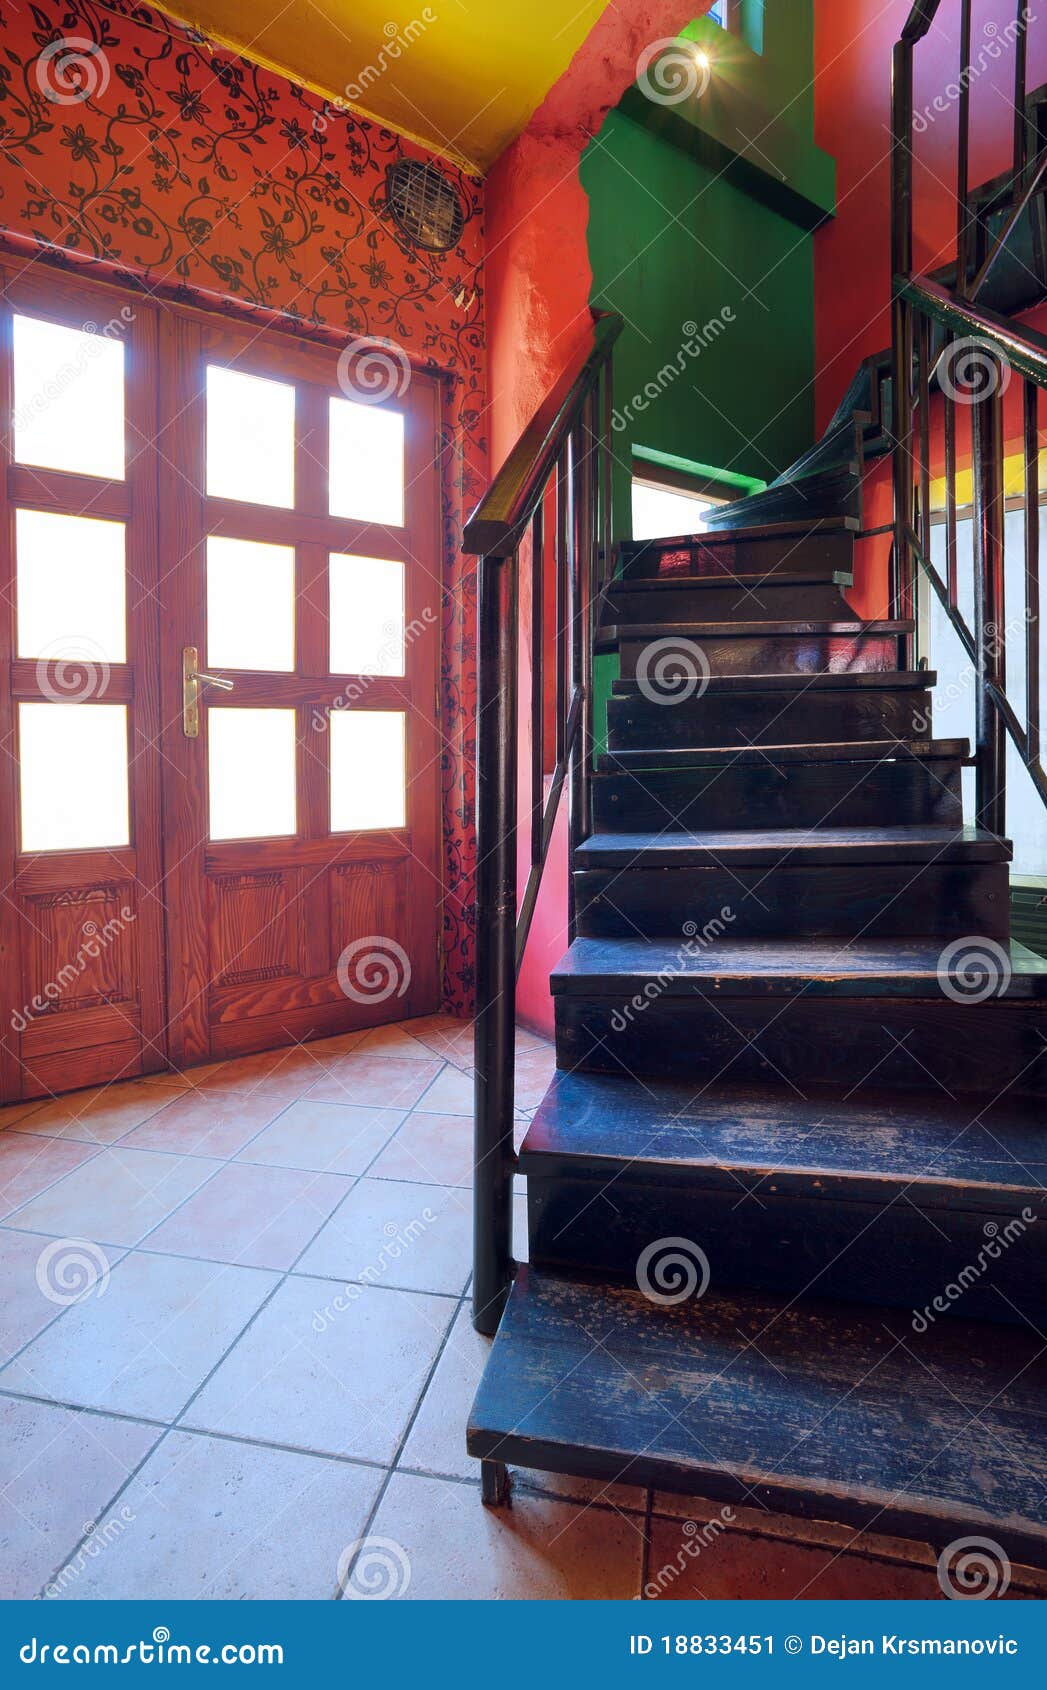 cafe stairways